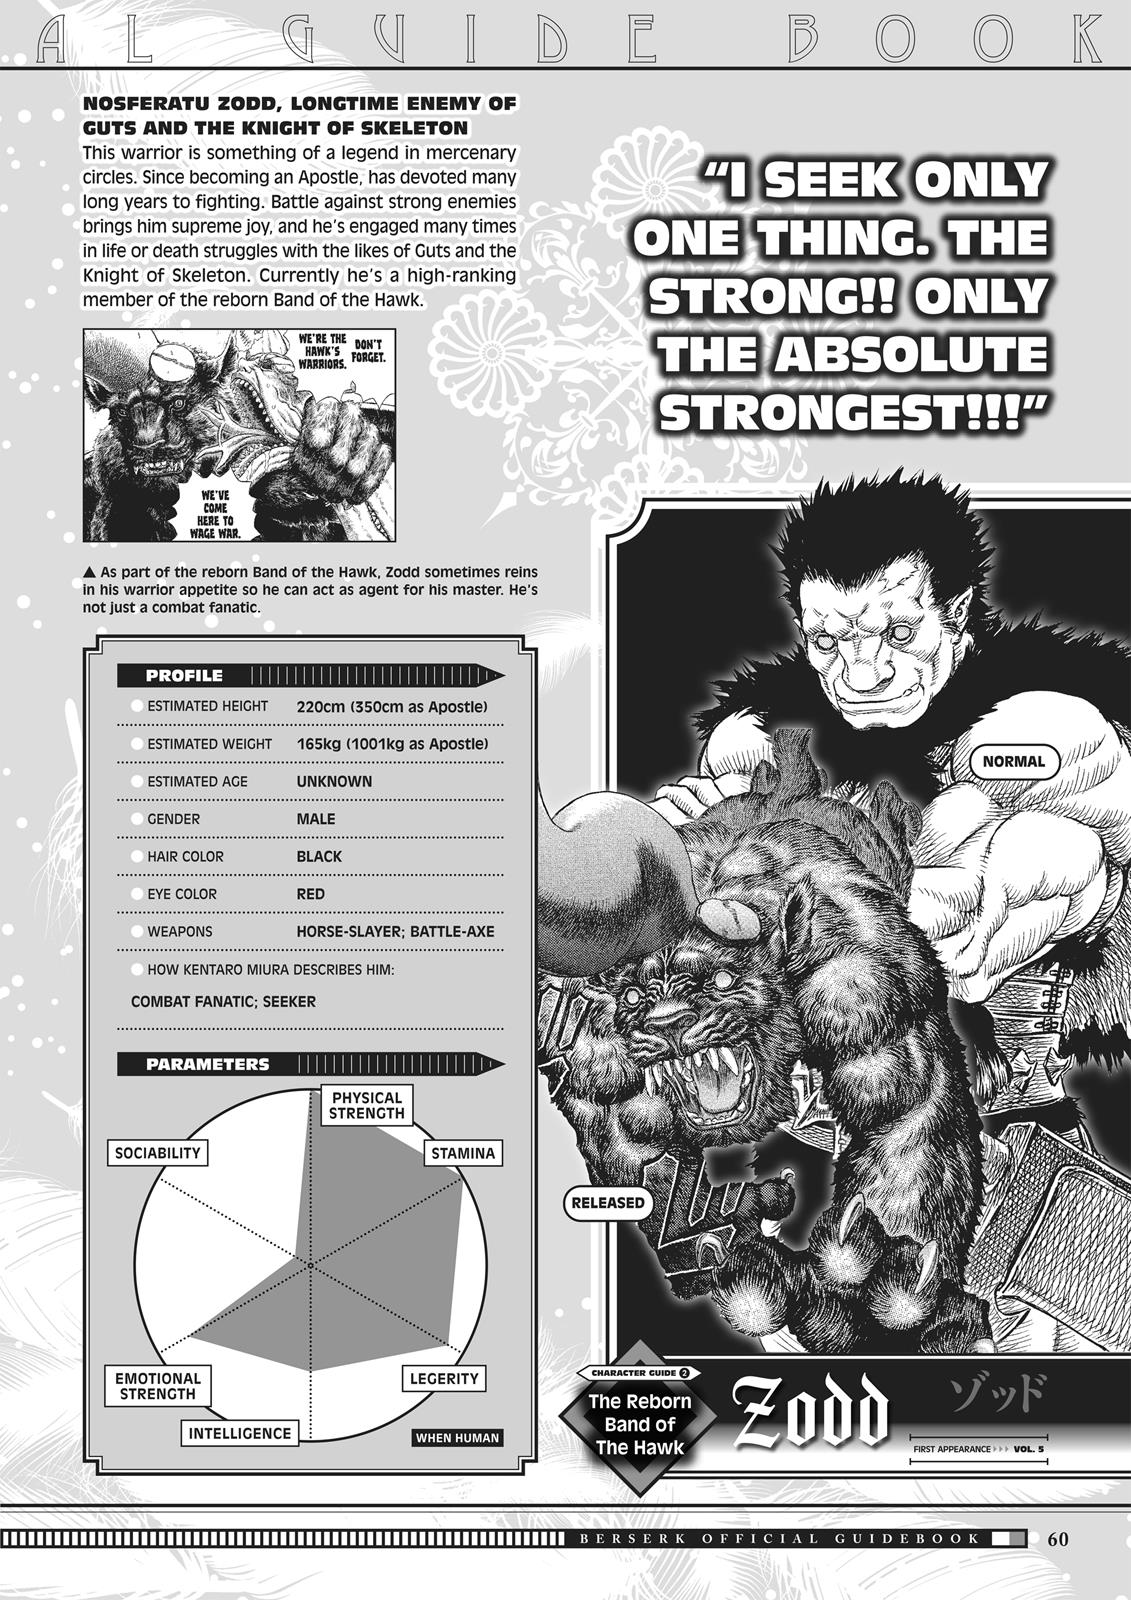 Berserk Manga Chapter 350.5 image 059